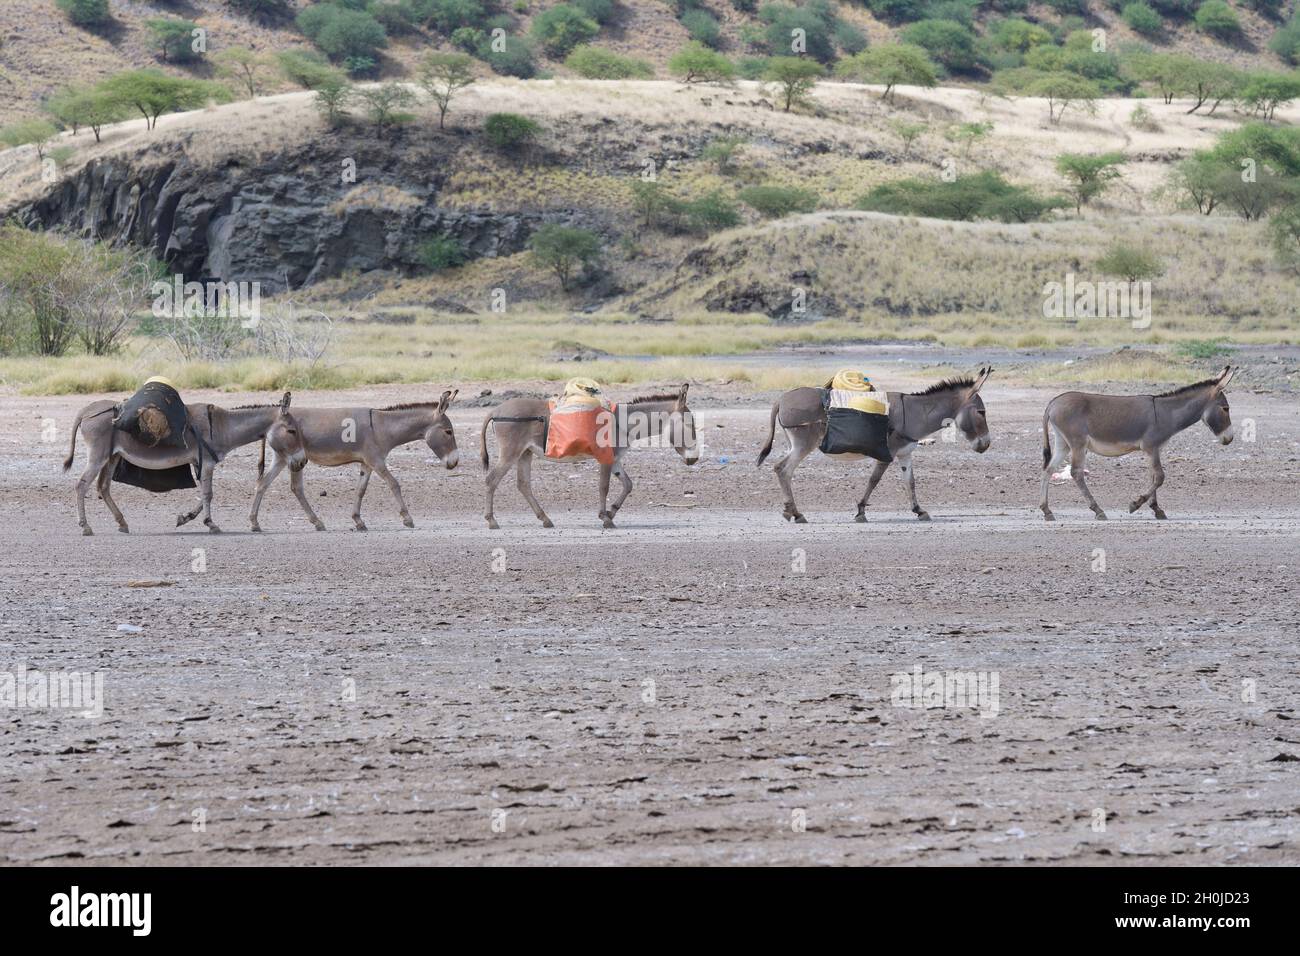 Une caravane d'ânes servant au transport de l'eau douce, traversant les rives séchées du lac Magadi, au Kenya.Le lac Magadi est une solution saline, alcaline Banque D'Images